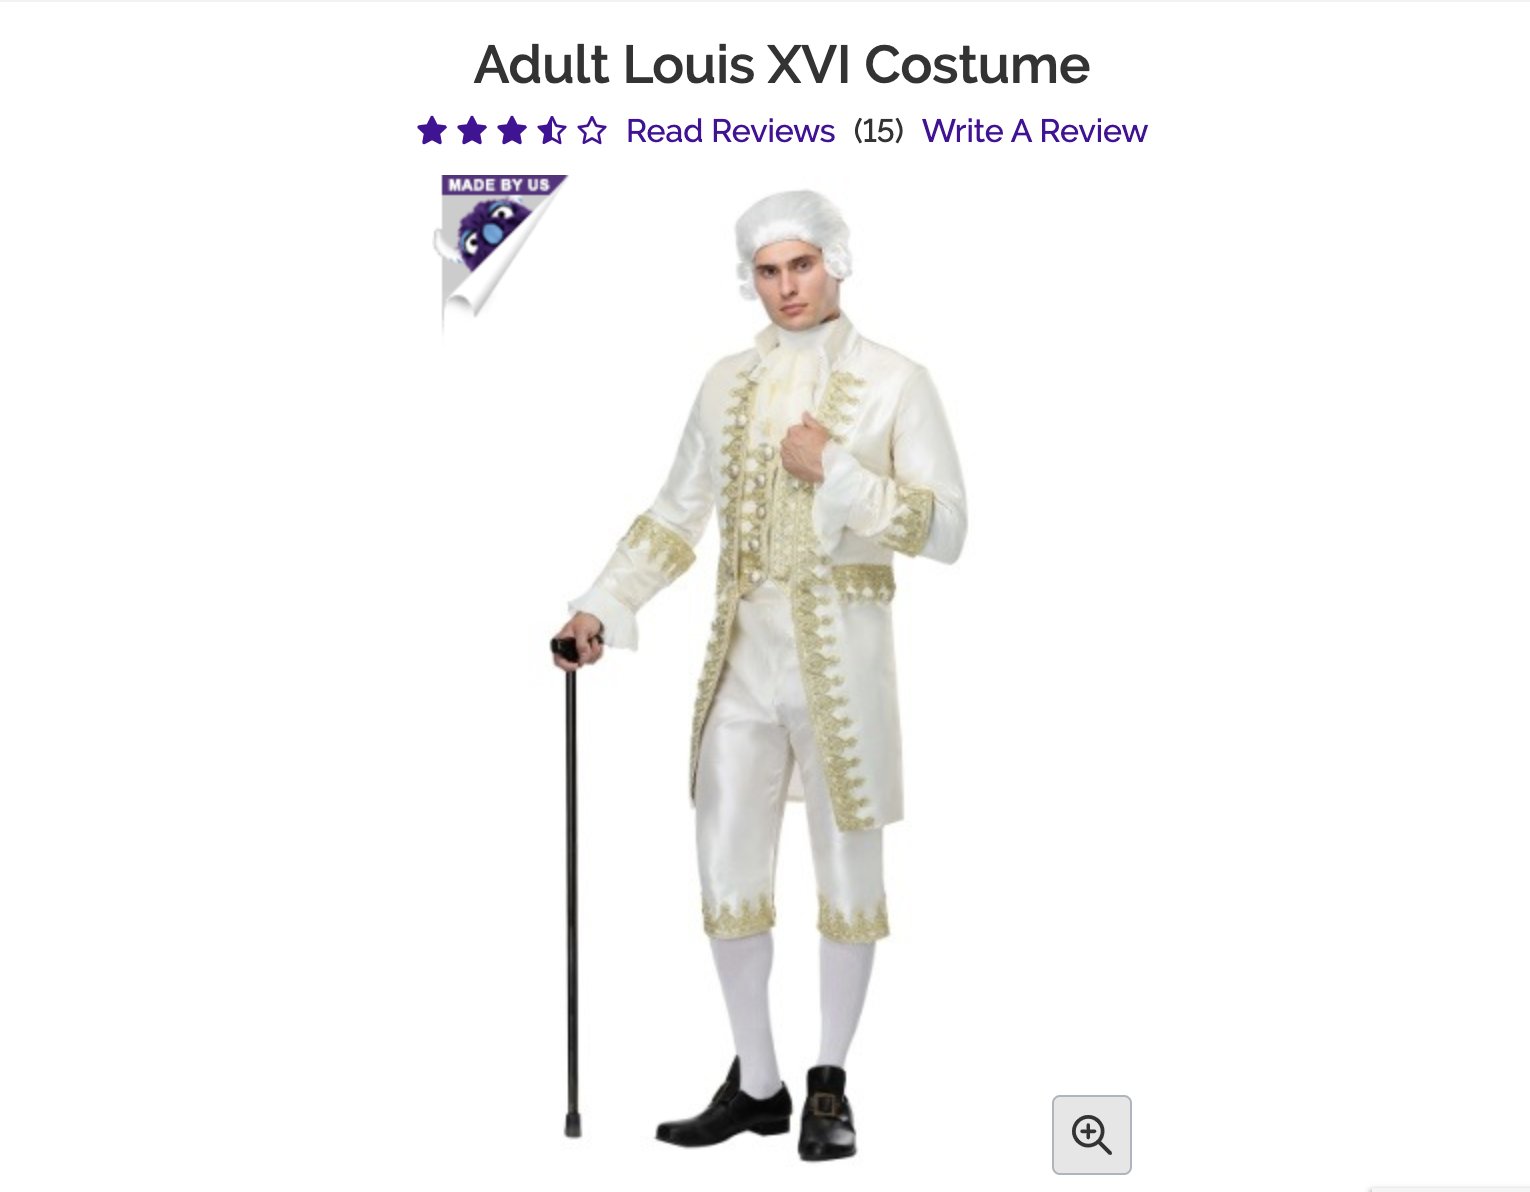 Jessica Sidman on X: Plot twist: It's a Louis XVI costume   / X